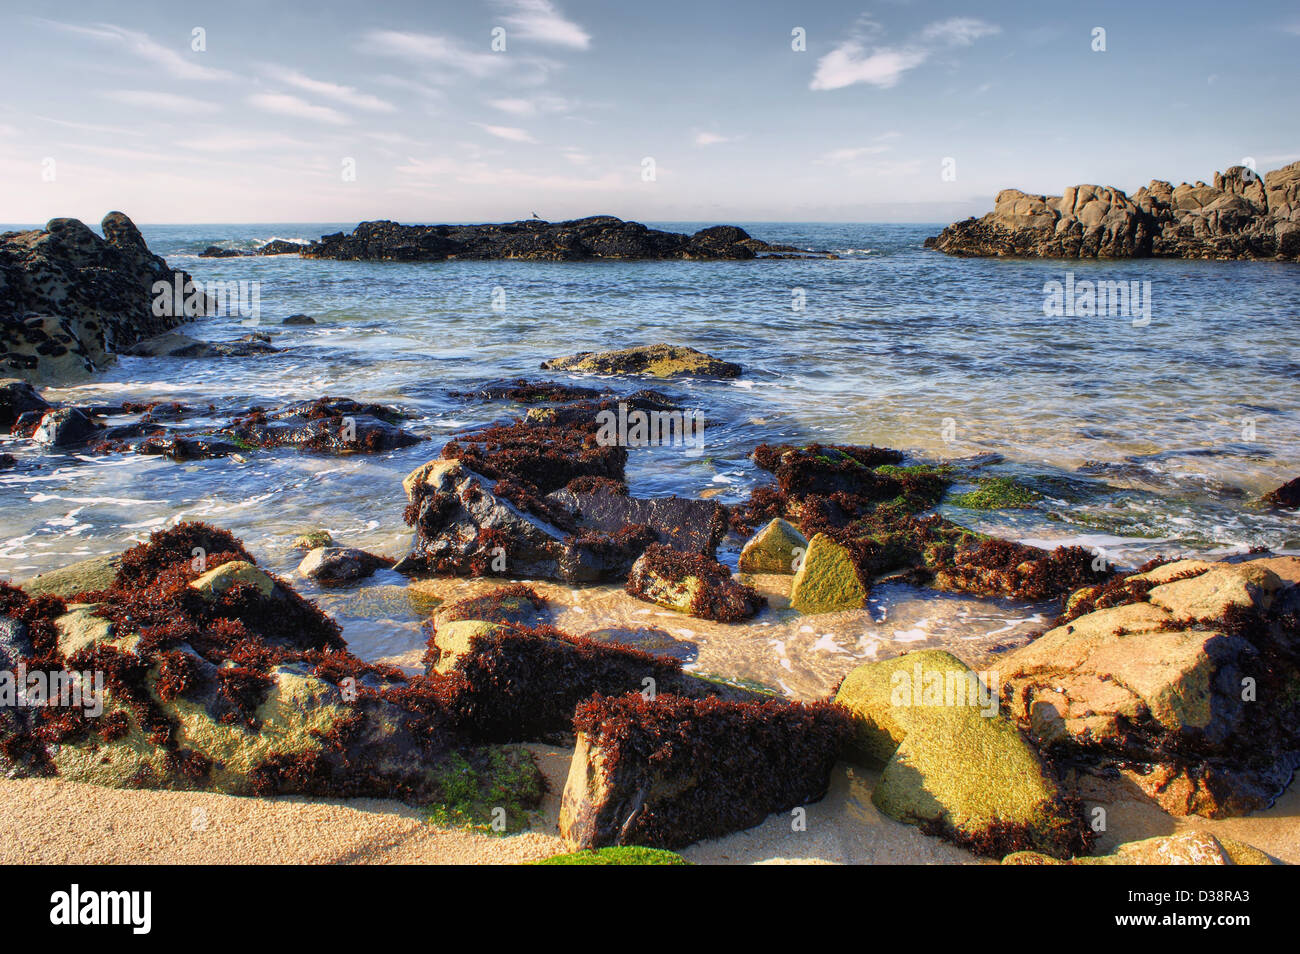 Seascape of Vila do Conde beach Stock Photo